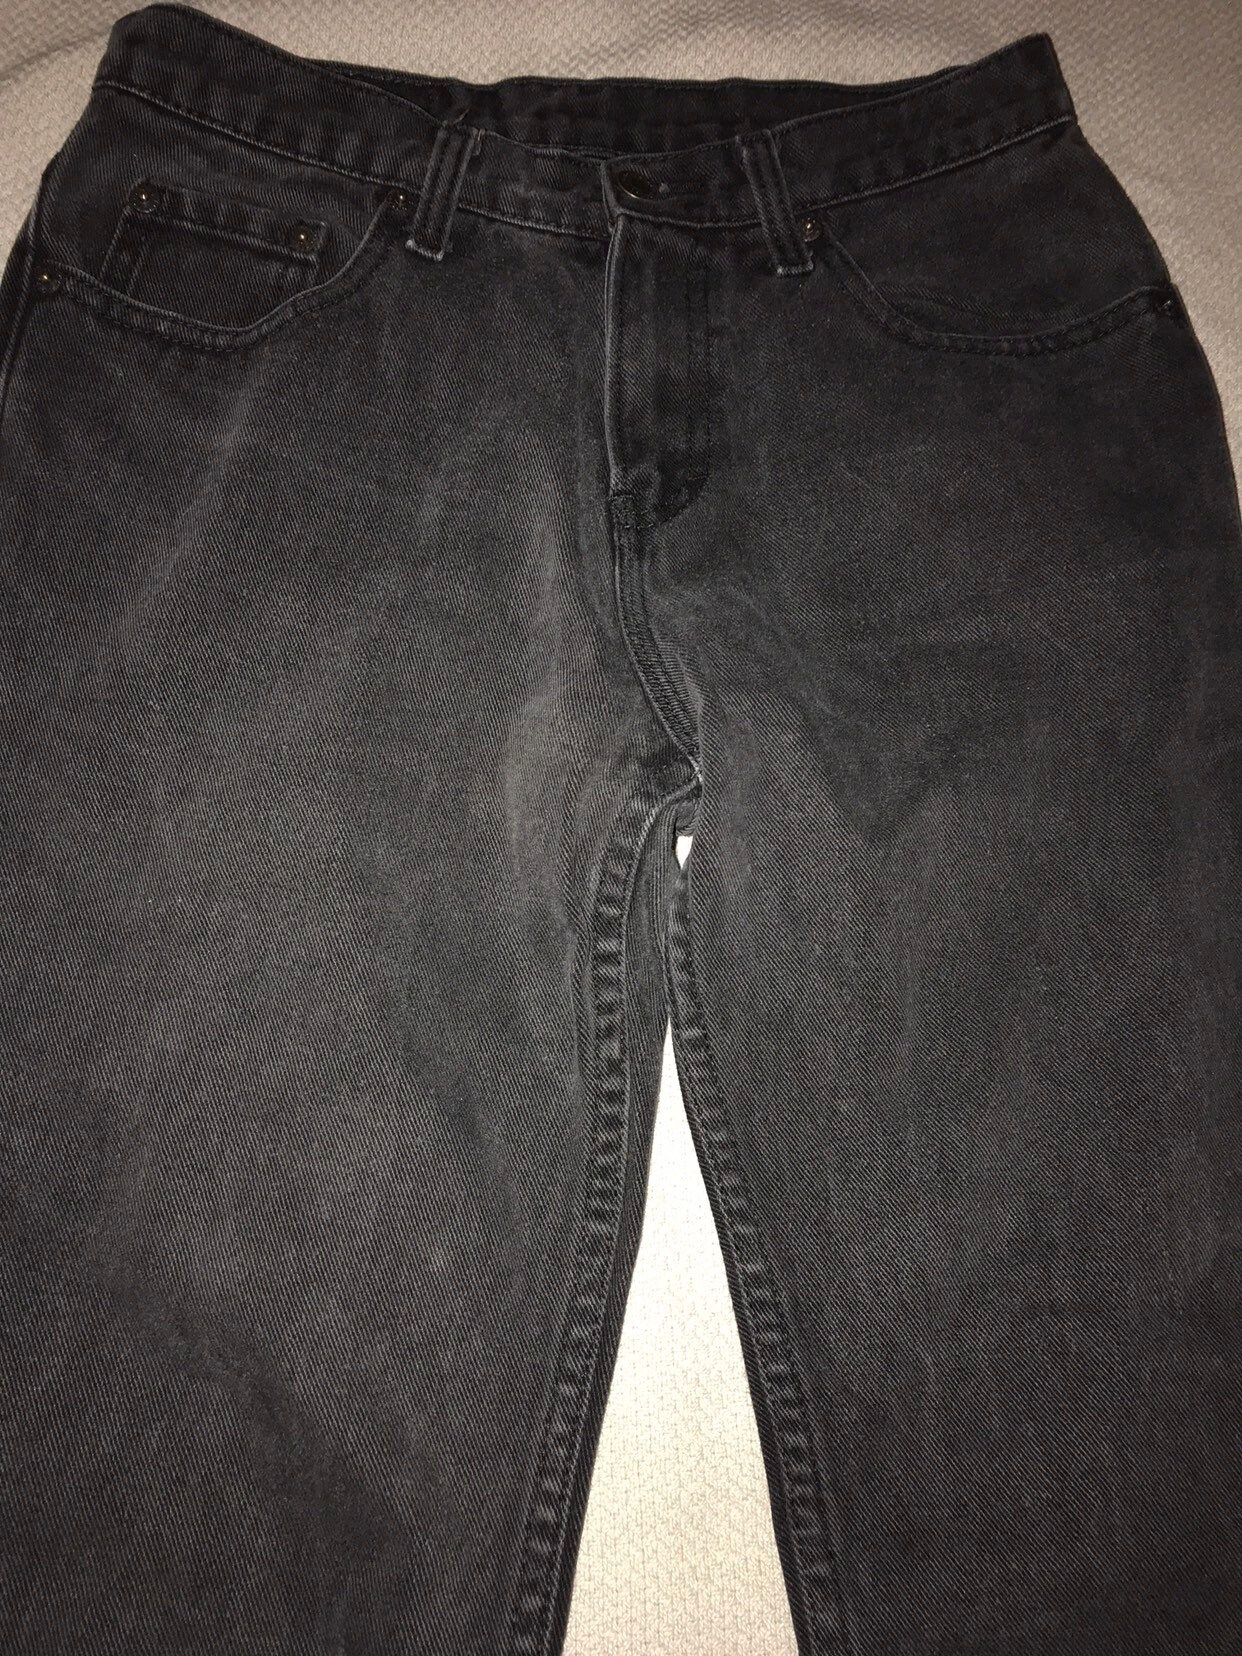 Vintage 80's Jordache Jeans. 1980's Black Jordache Jeans. Awesome 80's ...